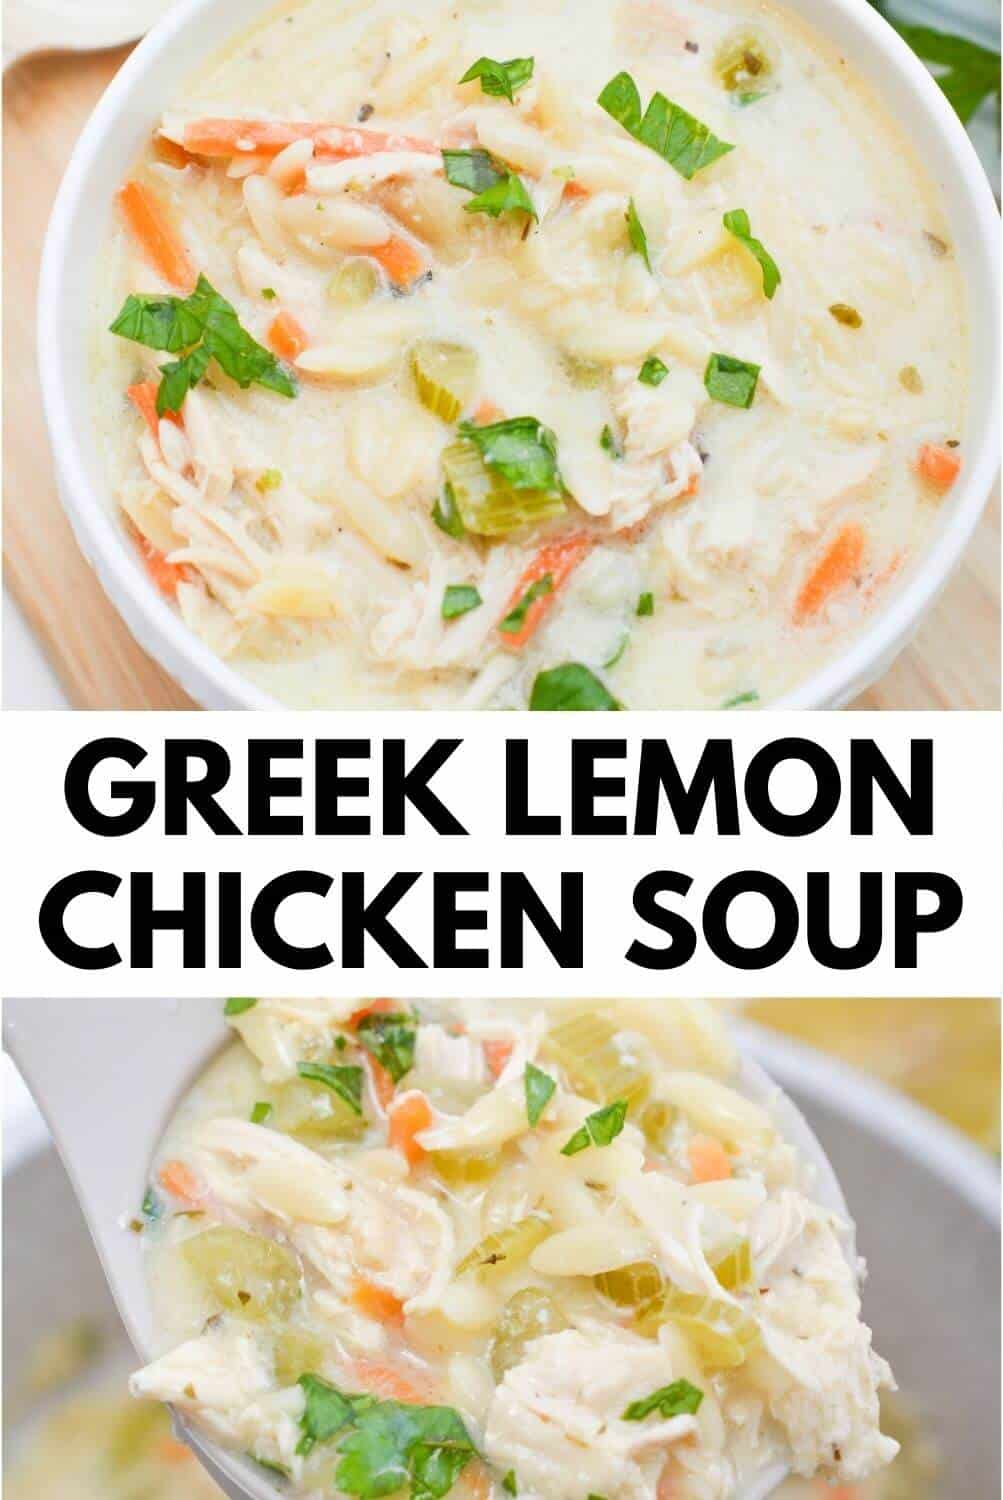 Greek lemon chicken soup in a bowl.